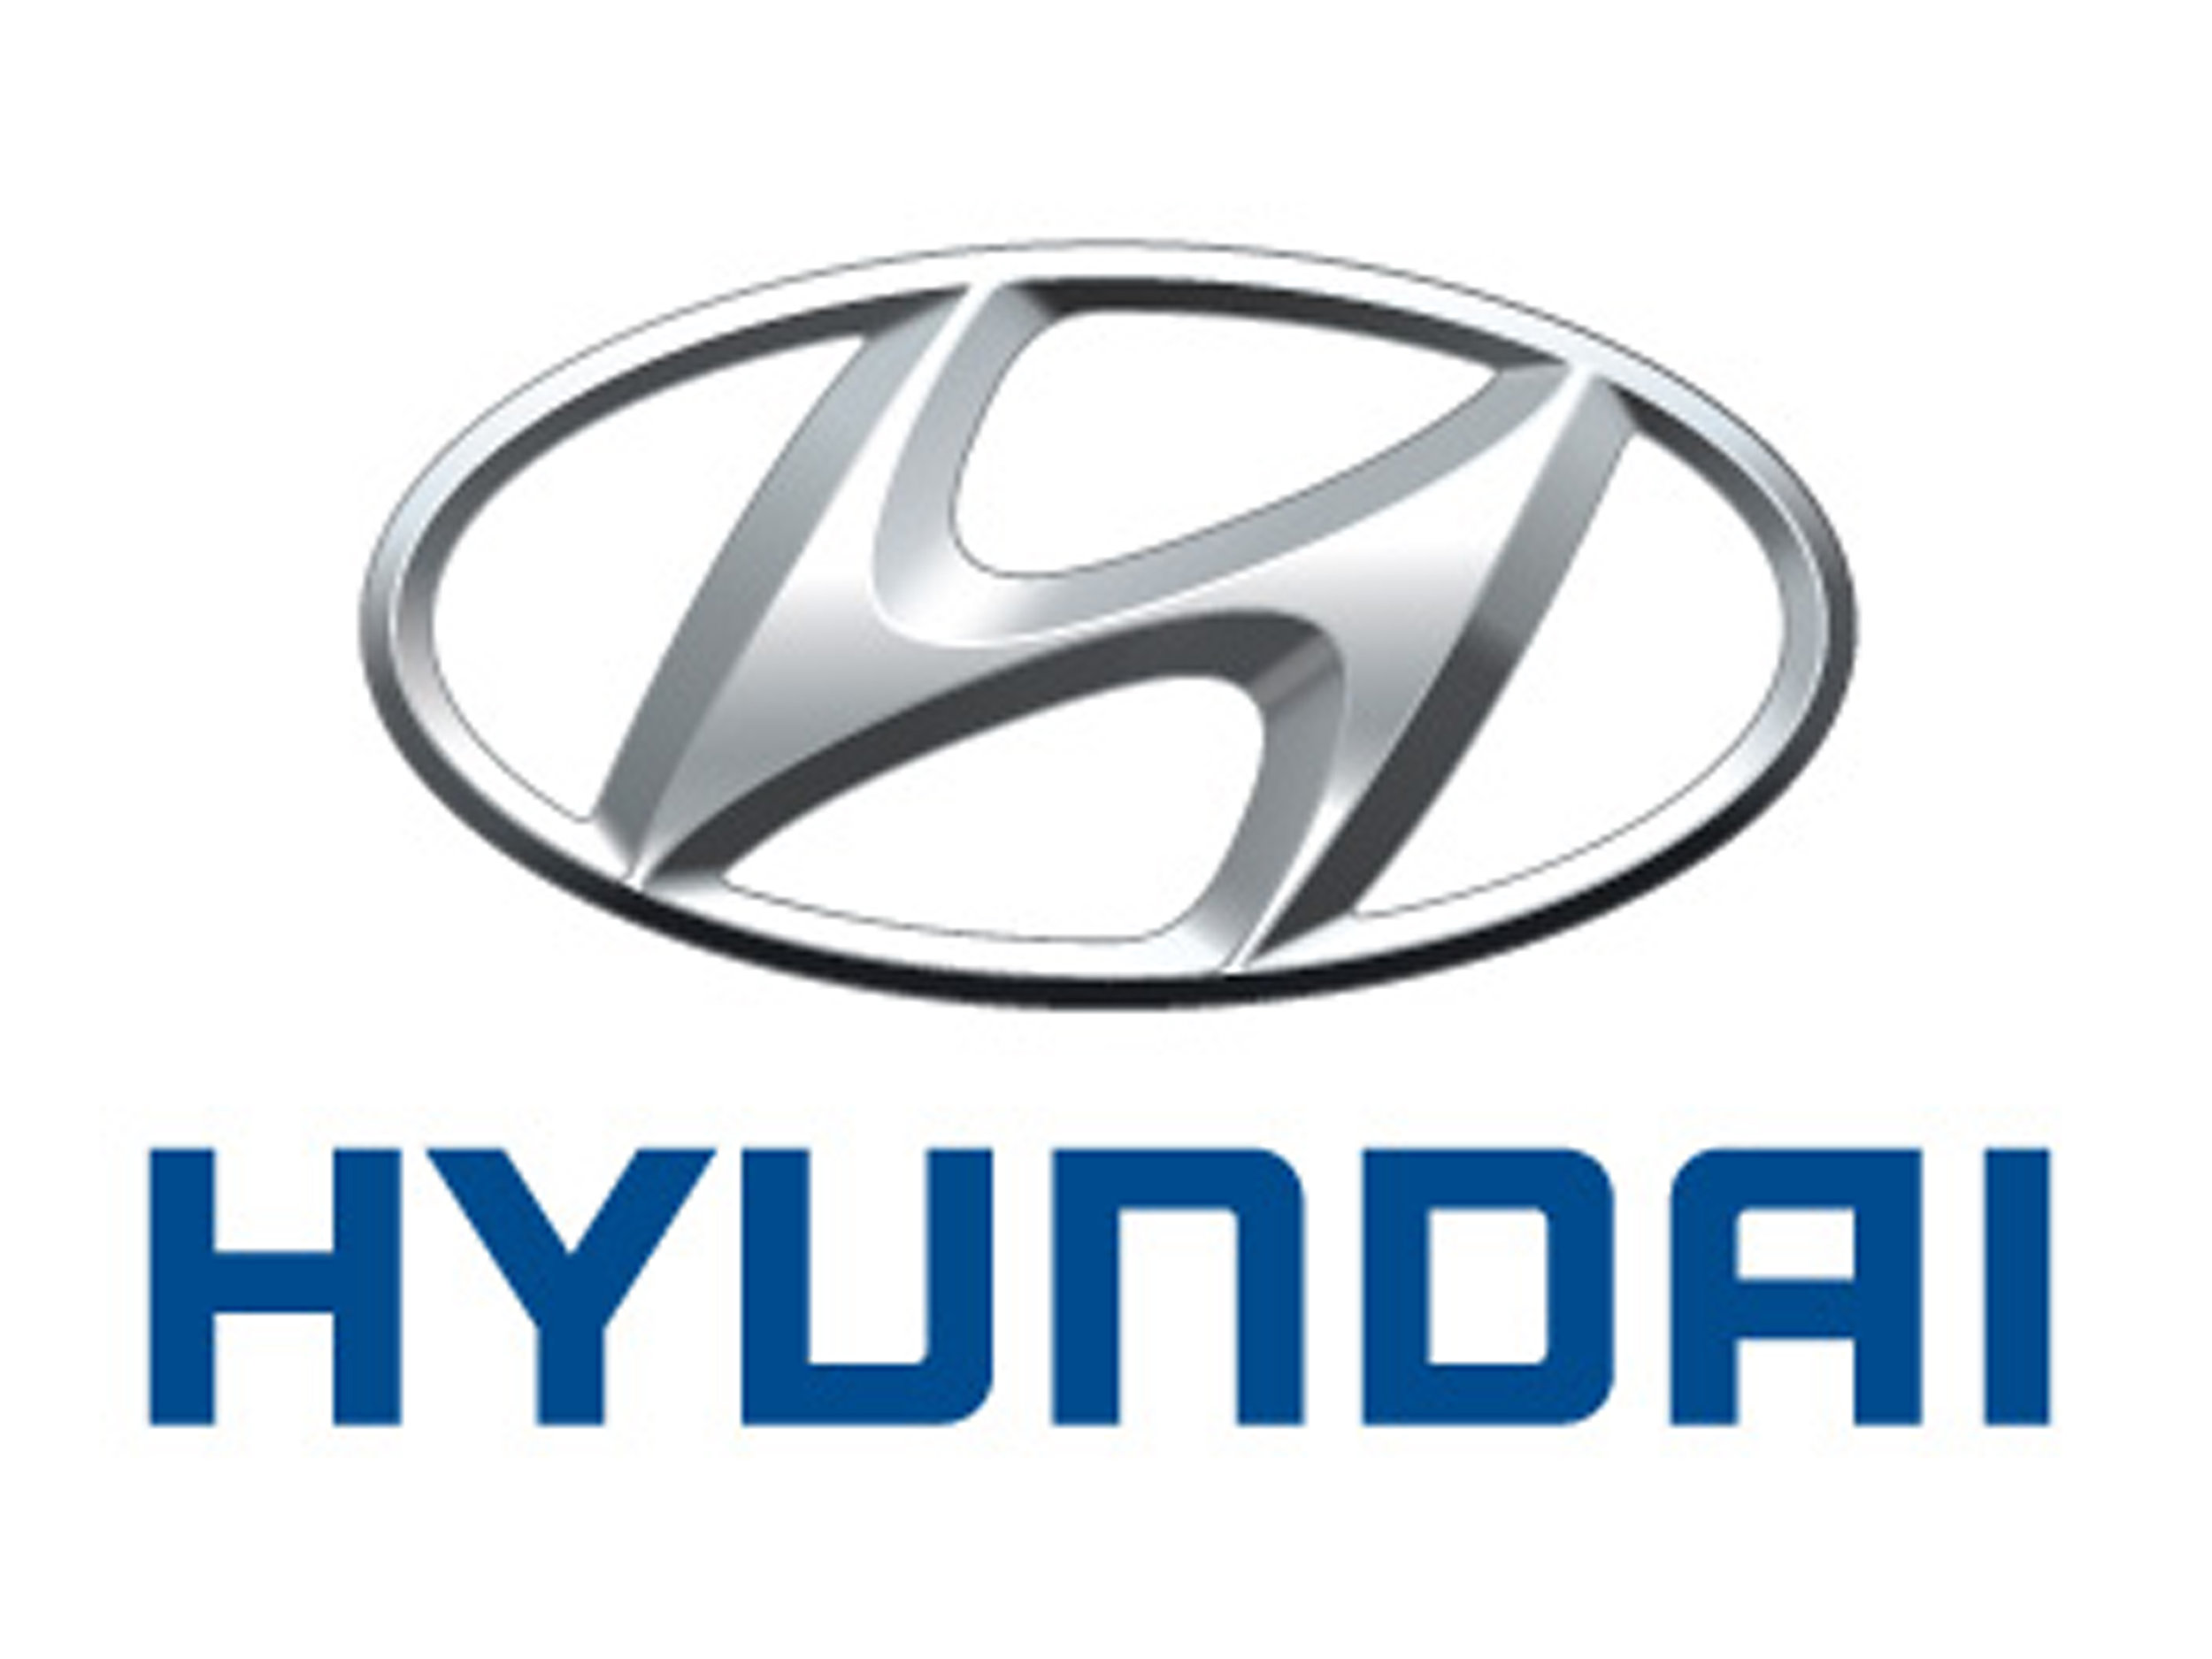 Hyundai_logo-2.jpg